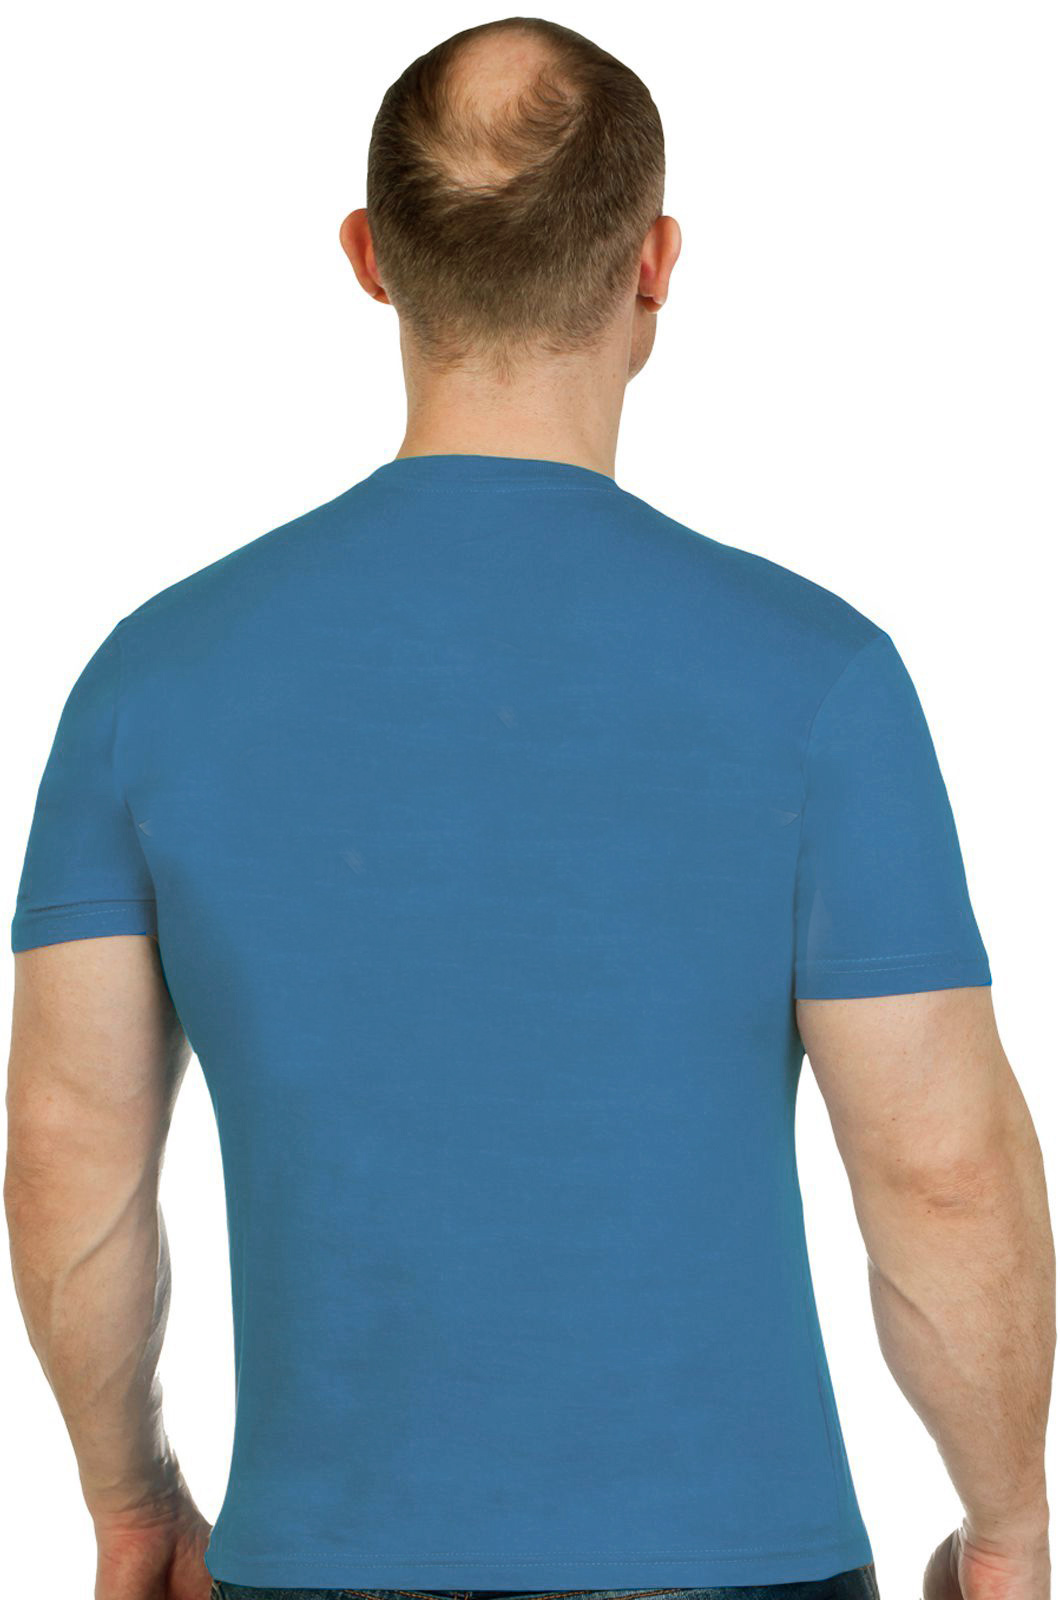 Купить сине-зеленую мужскую футболку с вышитой эмблемой ПОЛИЦИИ с доставкой в любой город